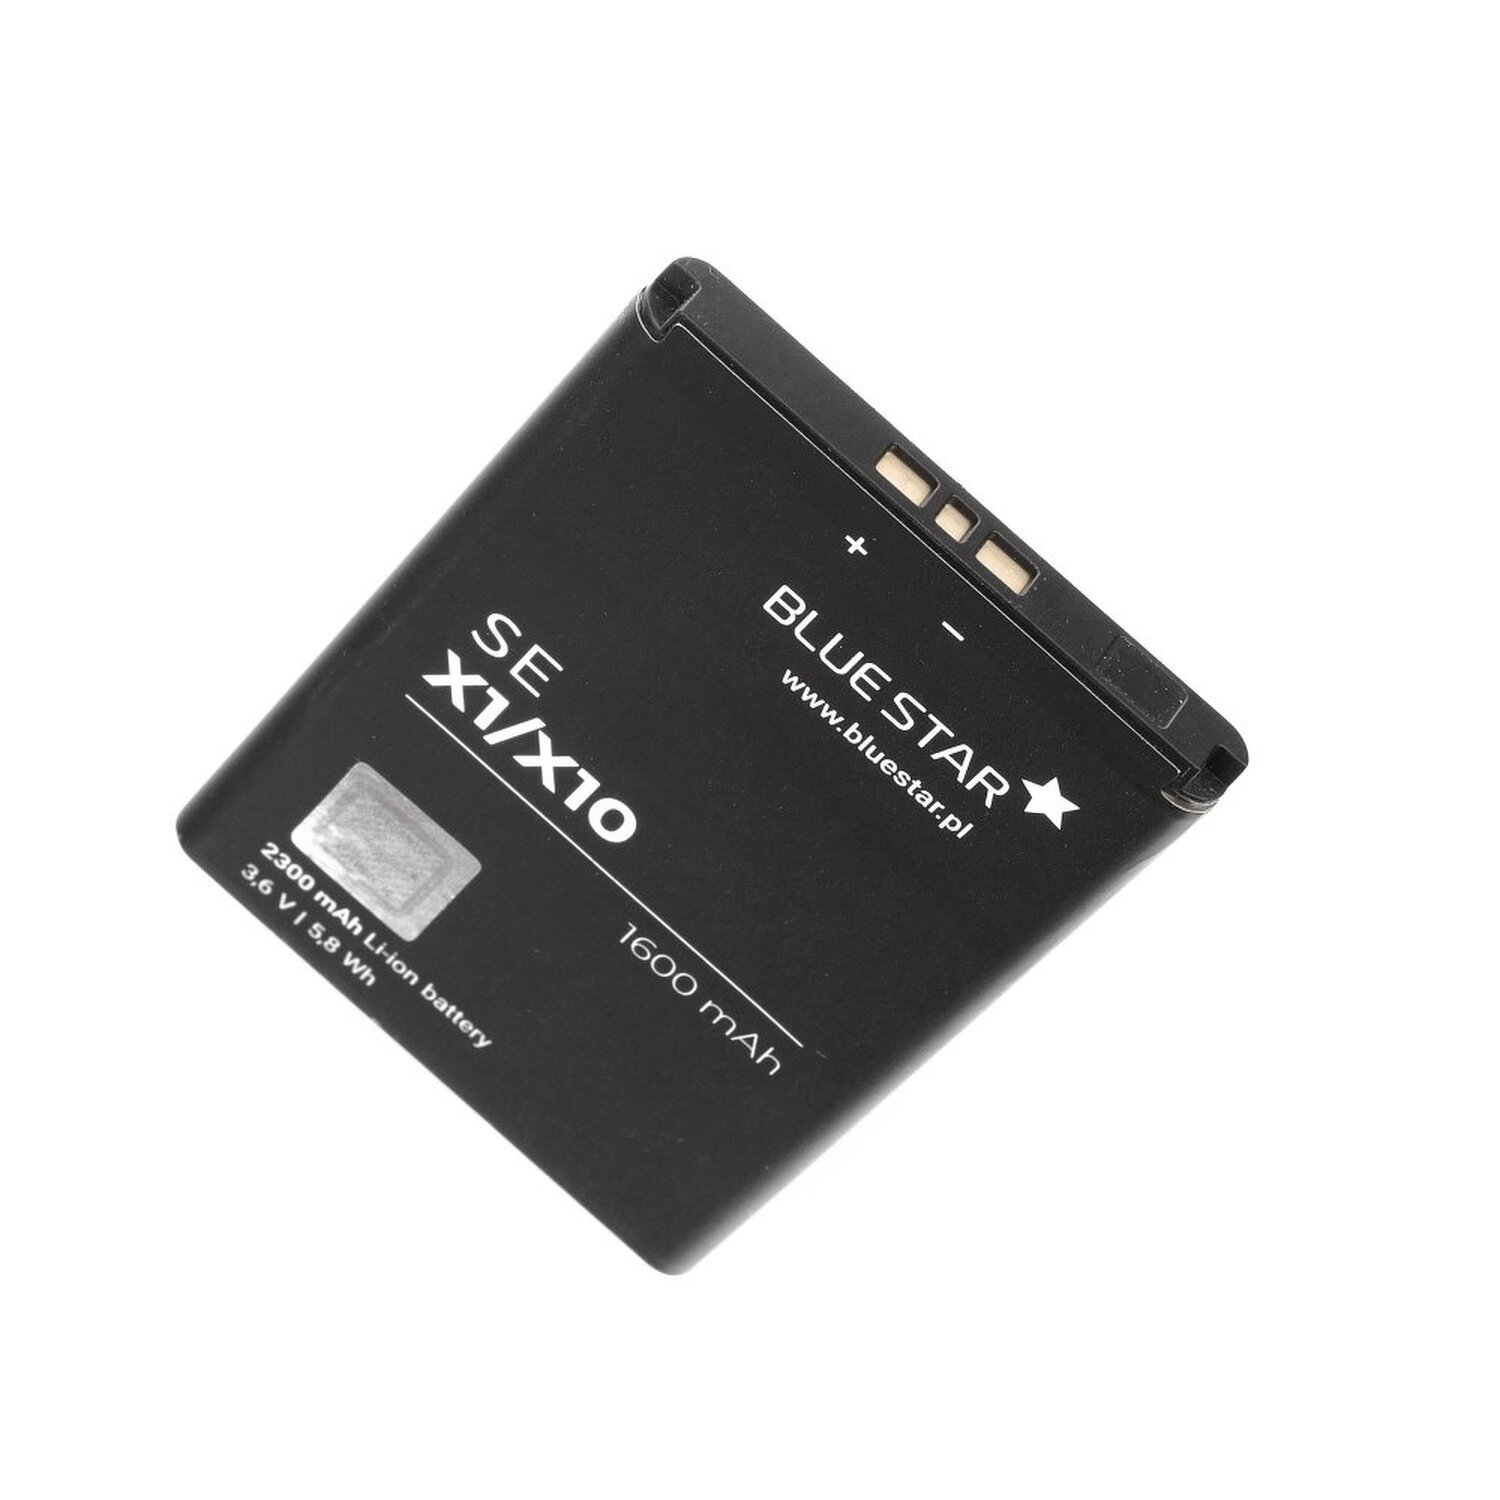 BLUESTAR Akku Sony Xperia Handyakku für X1 Li-Ion / X10